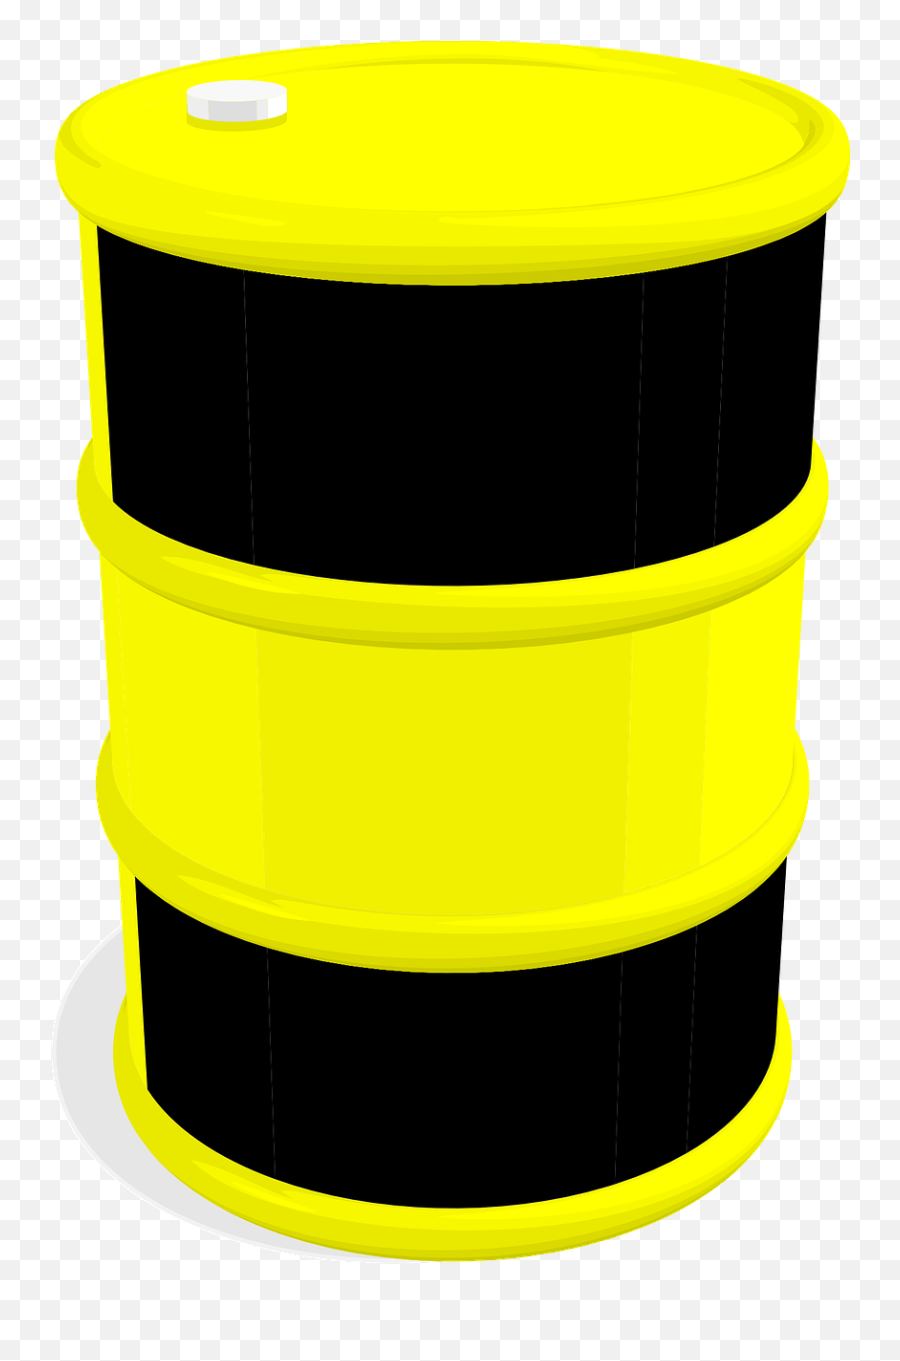 Barrel Clipart Water Drum - Yellow And Black Barrels Emoji,Barrel Clipart